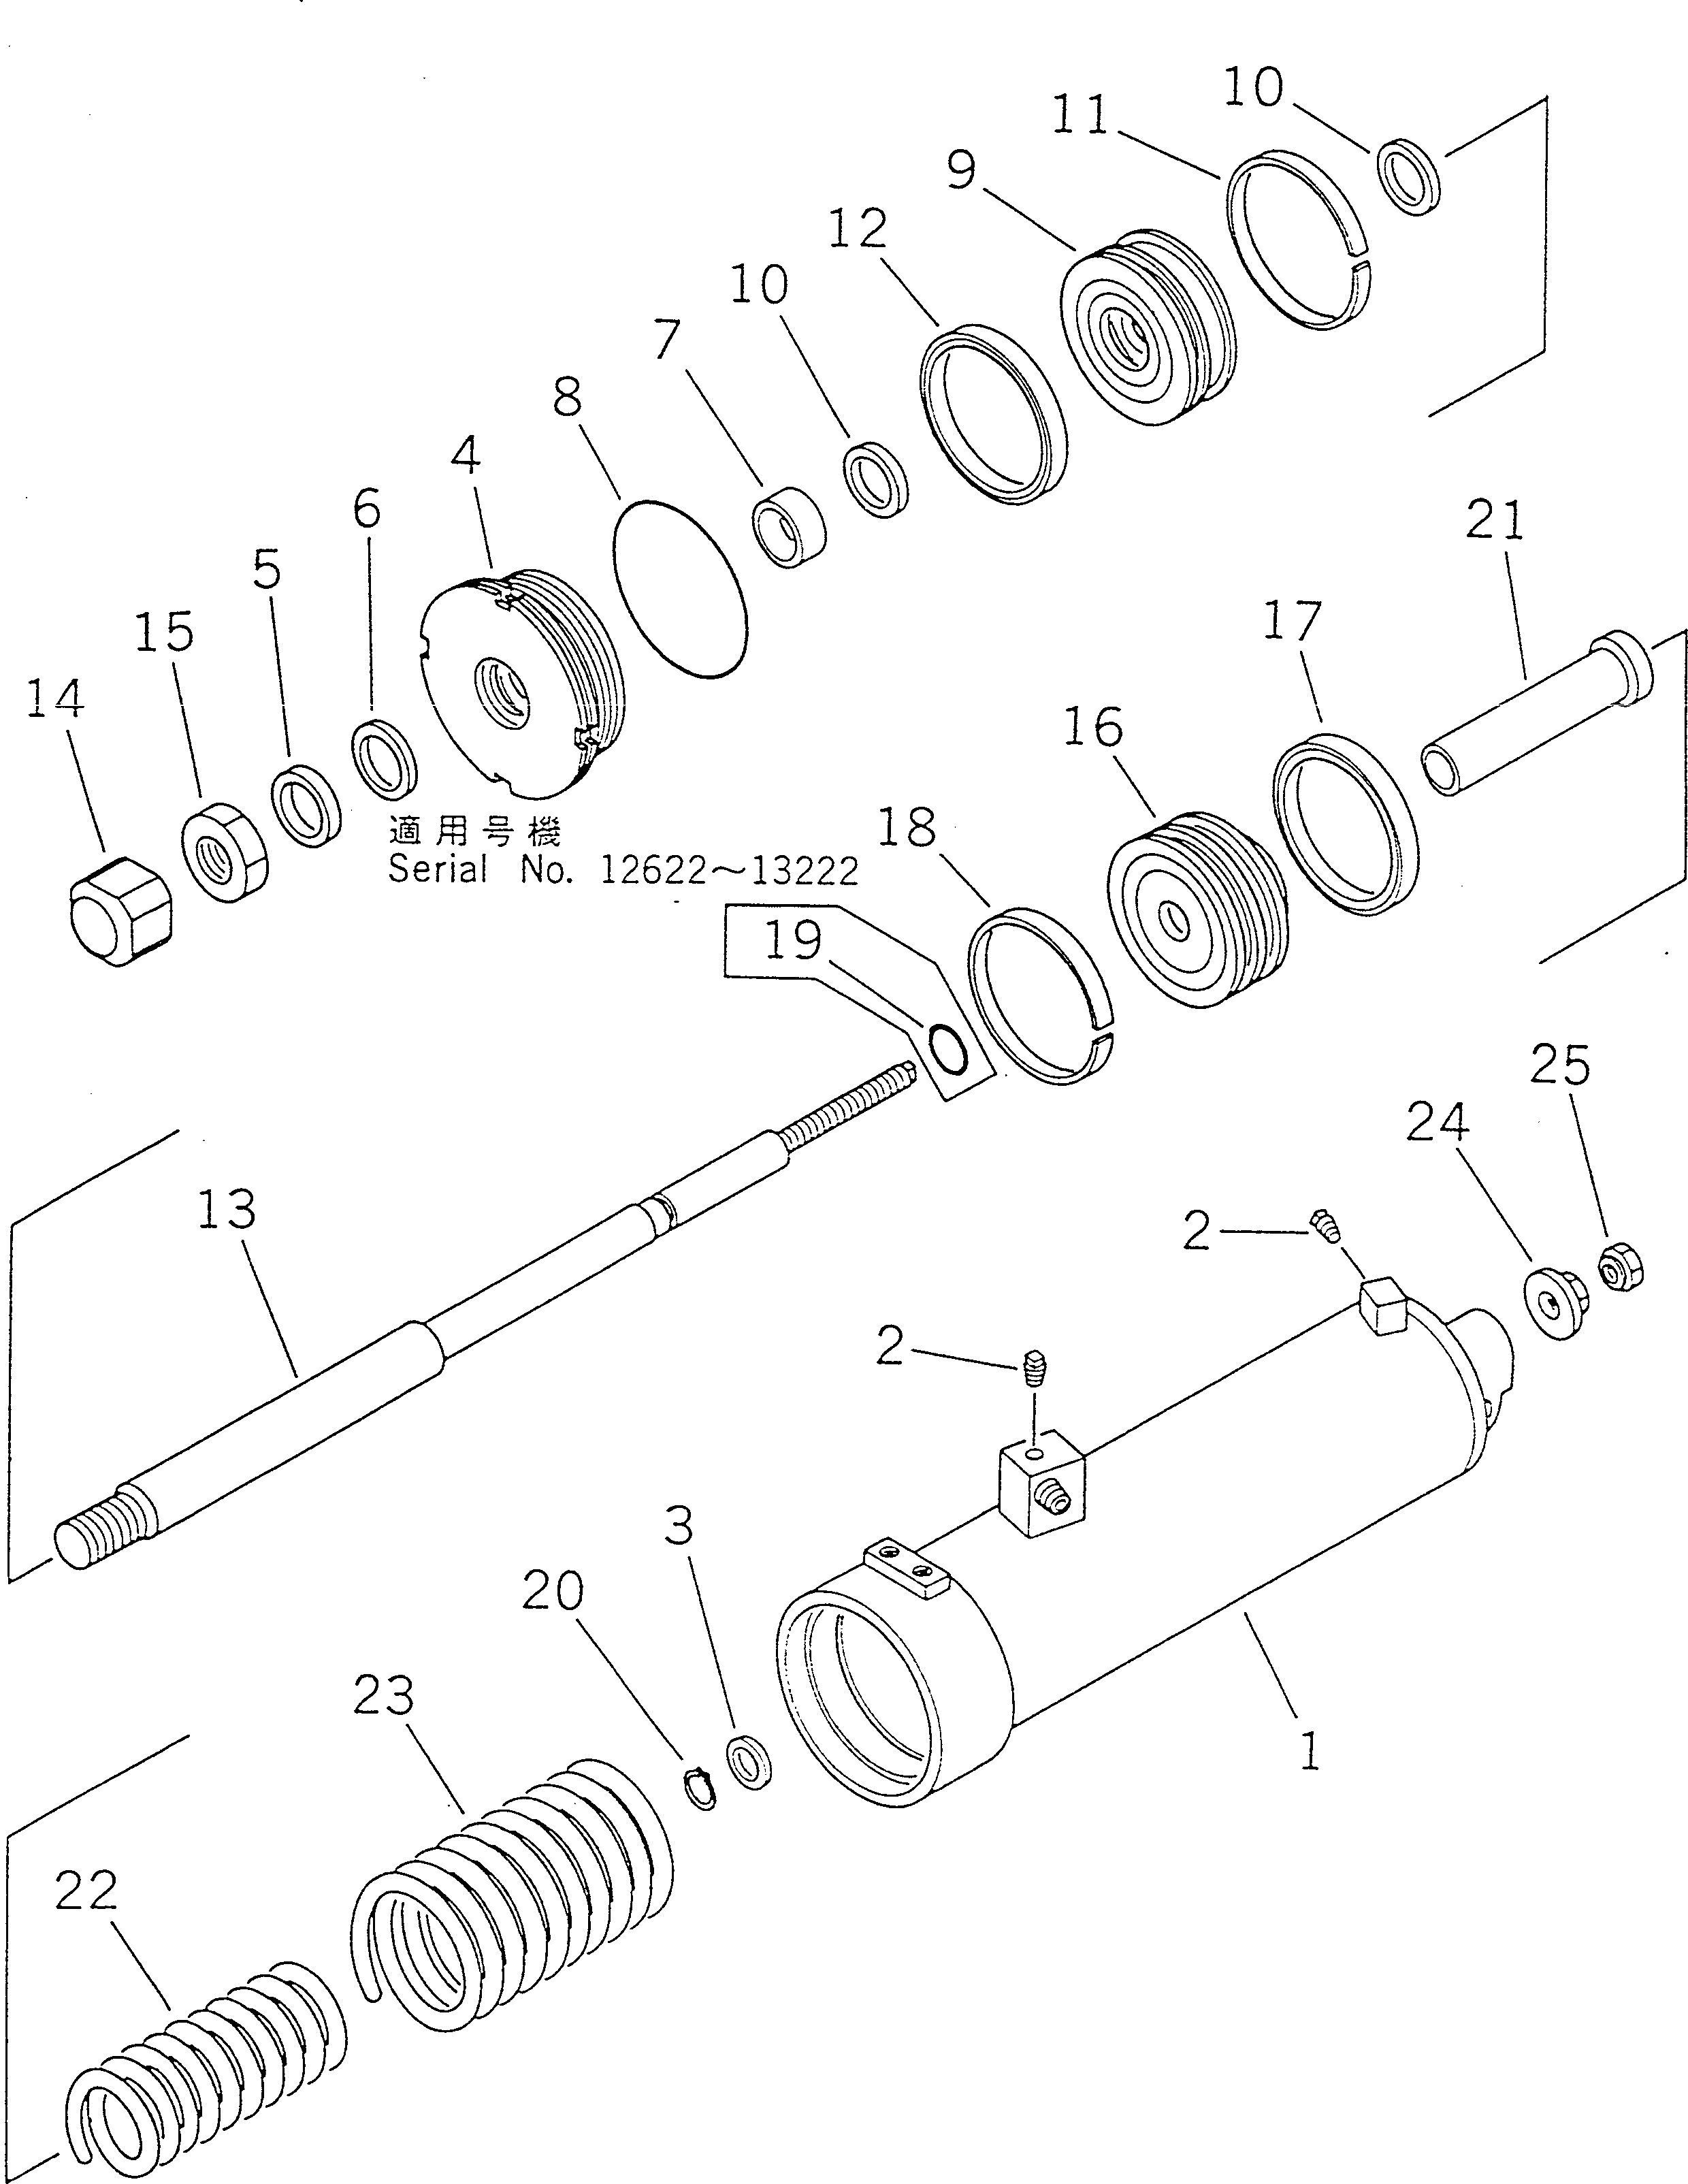 230. BRAKE ASSISTOR CYLINDER [4701] - Komatsu part D355A-5 S/N 12622-UP [d355a-5c]